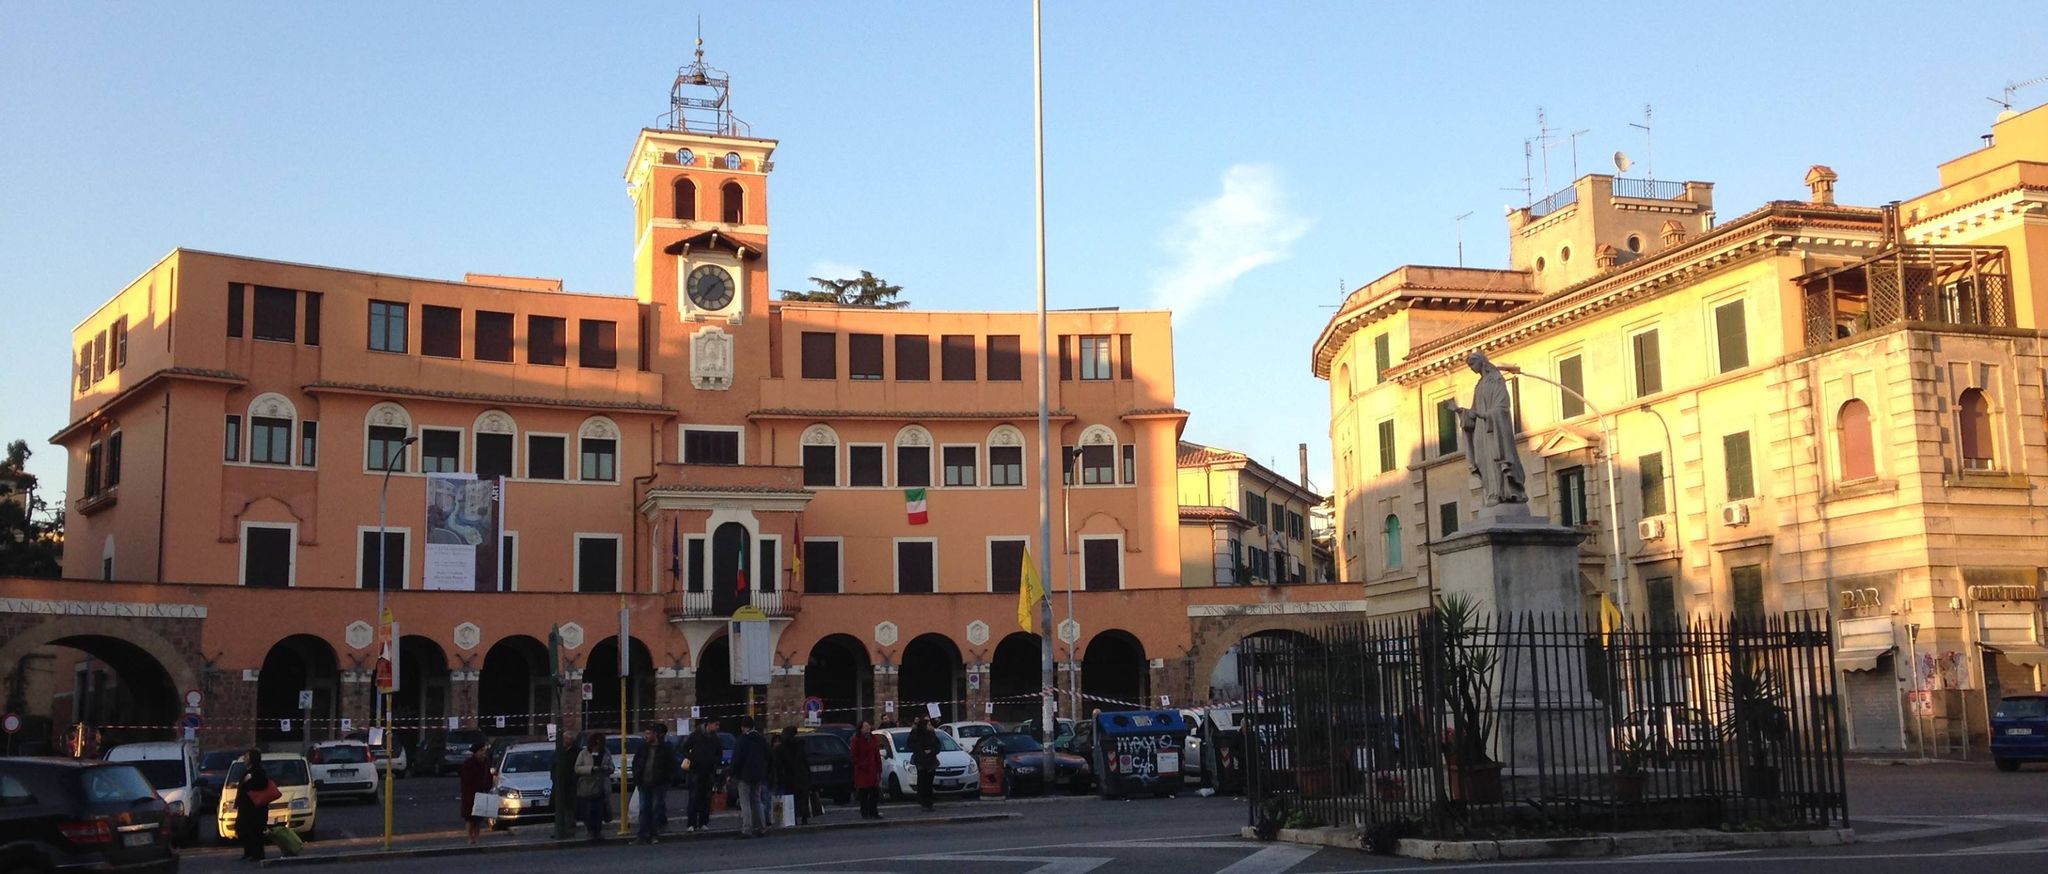 Piazza Sempione, sede del III Municipio